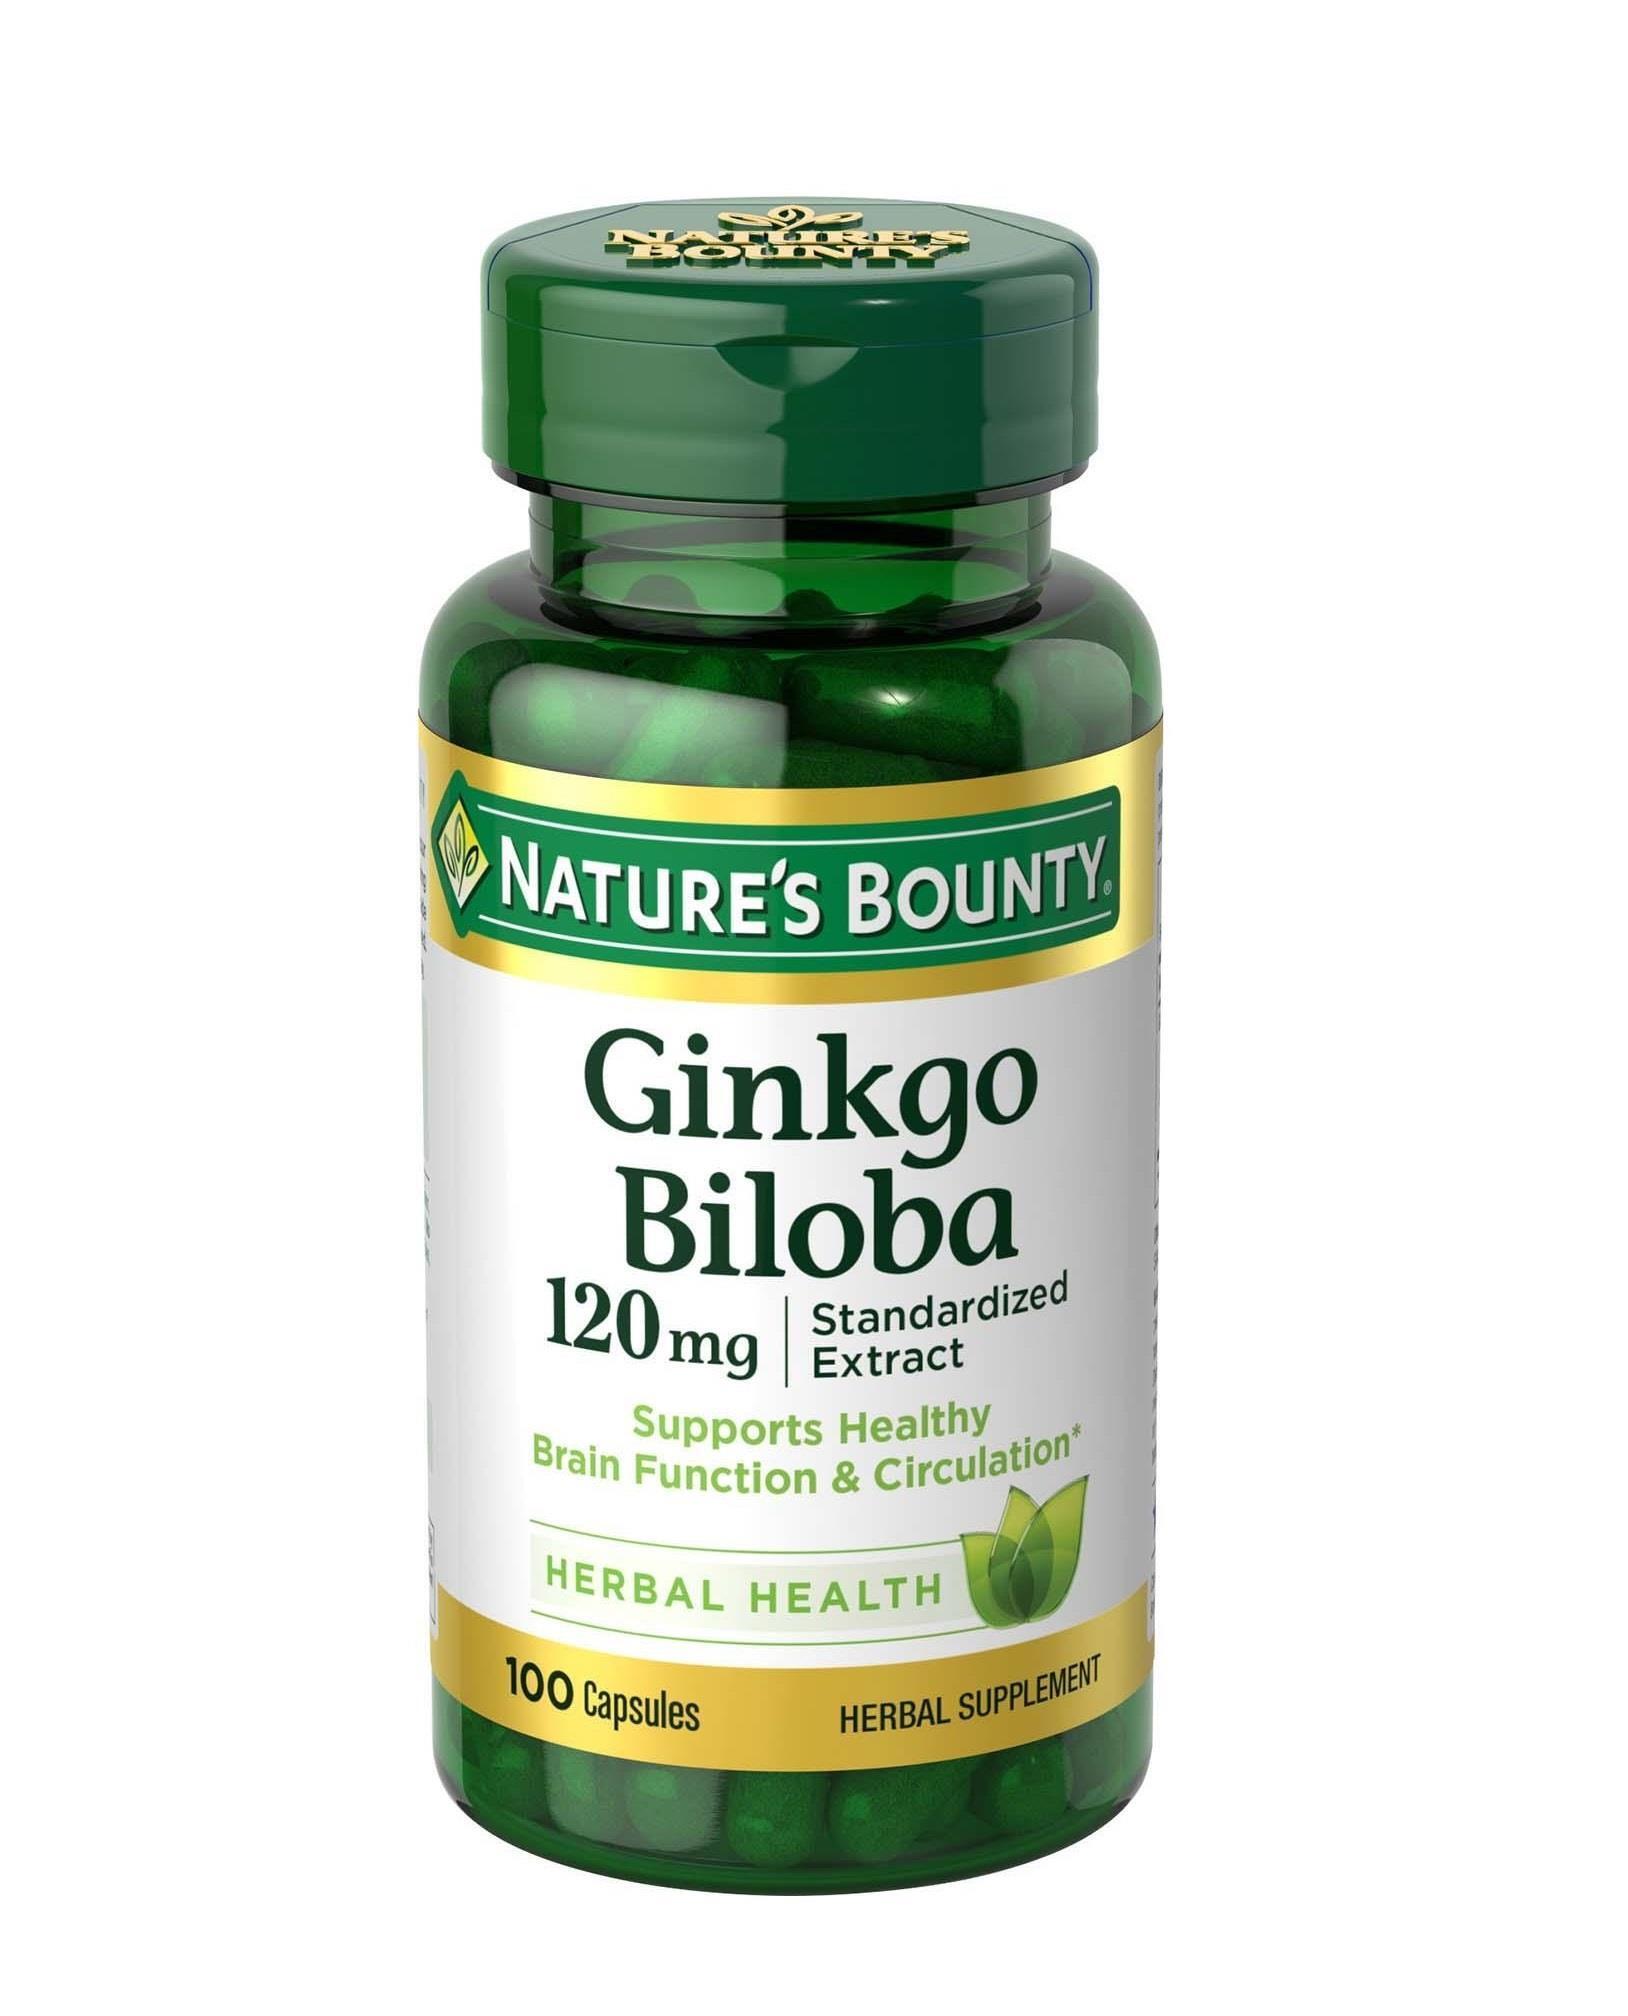 Nu-Health Ginkgo Biloba chiết xuất từ cây bạch quả giúp cải thiện trí nhớ (Nguồn: vuidulich.vn)